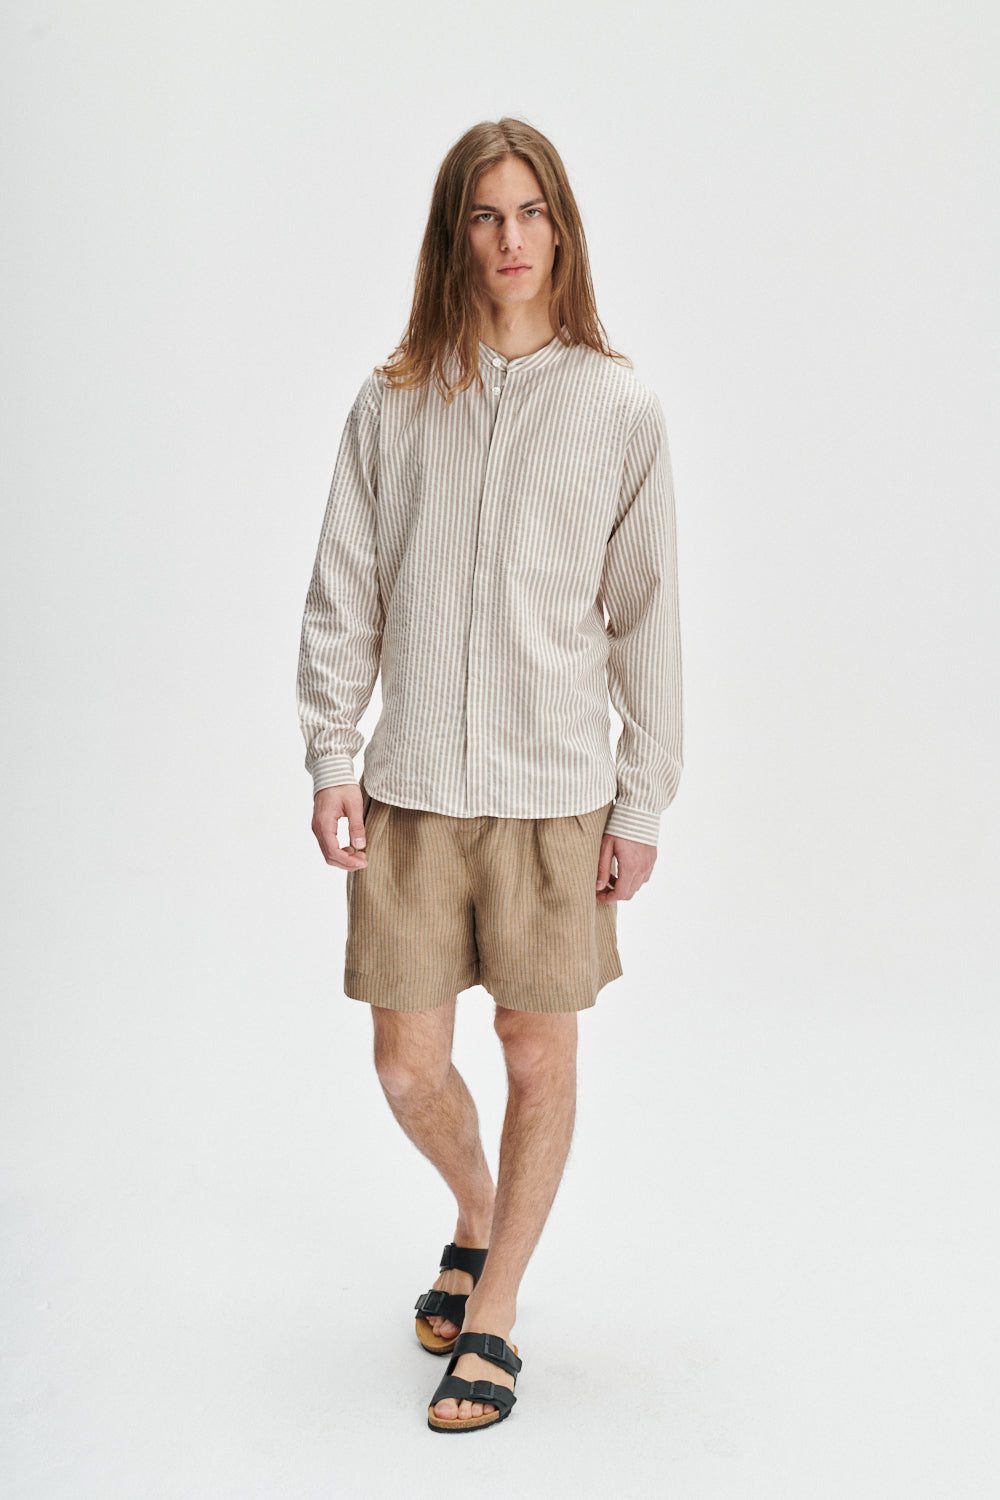 Zen Grandad Collar Shirt in a Beige Italian Cotton and Linen Blend